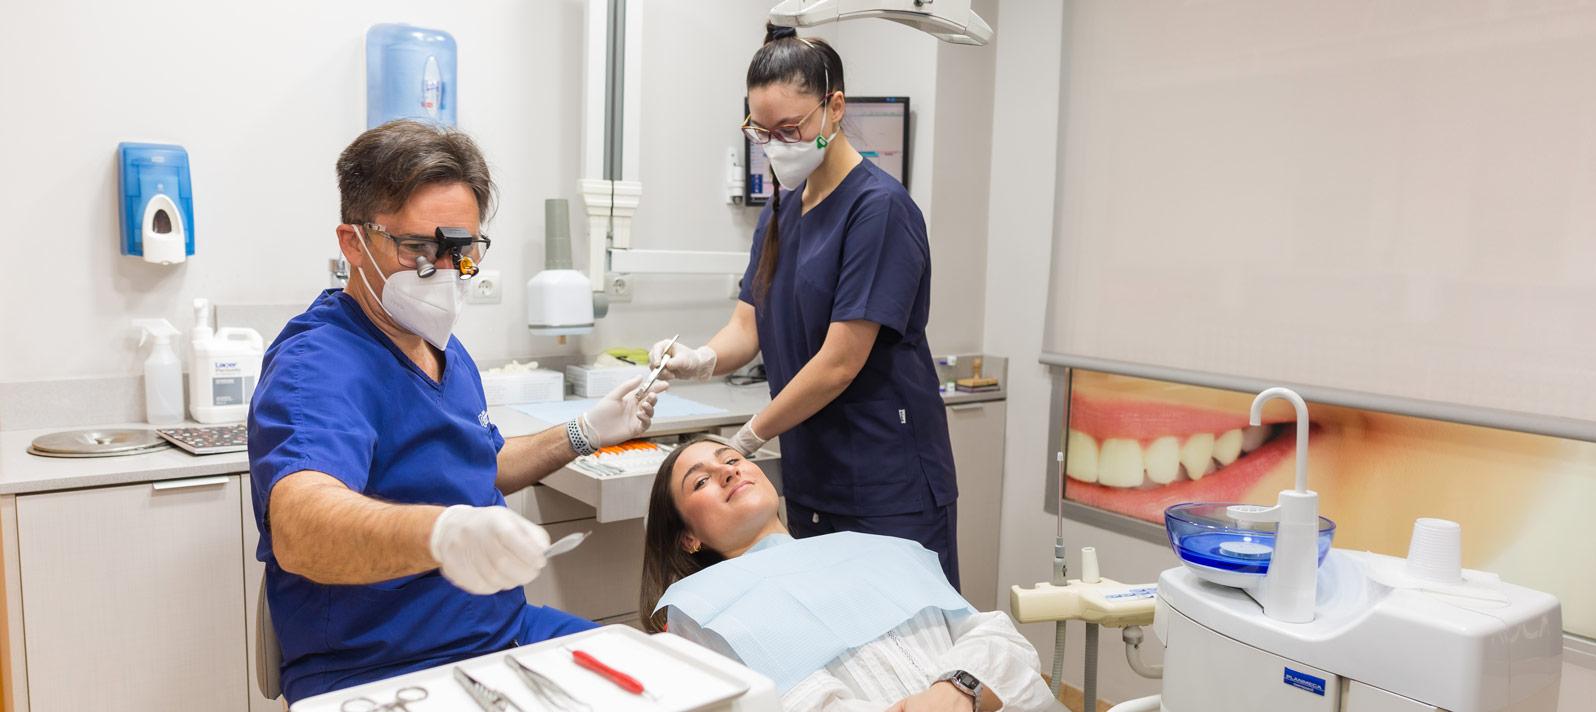 Revisión al dentista por candidiasis oral